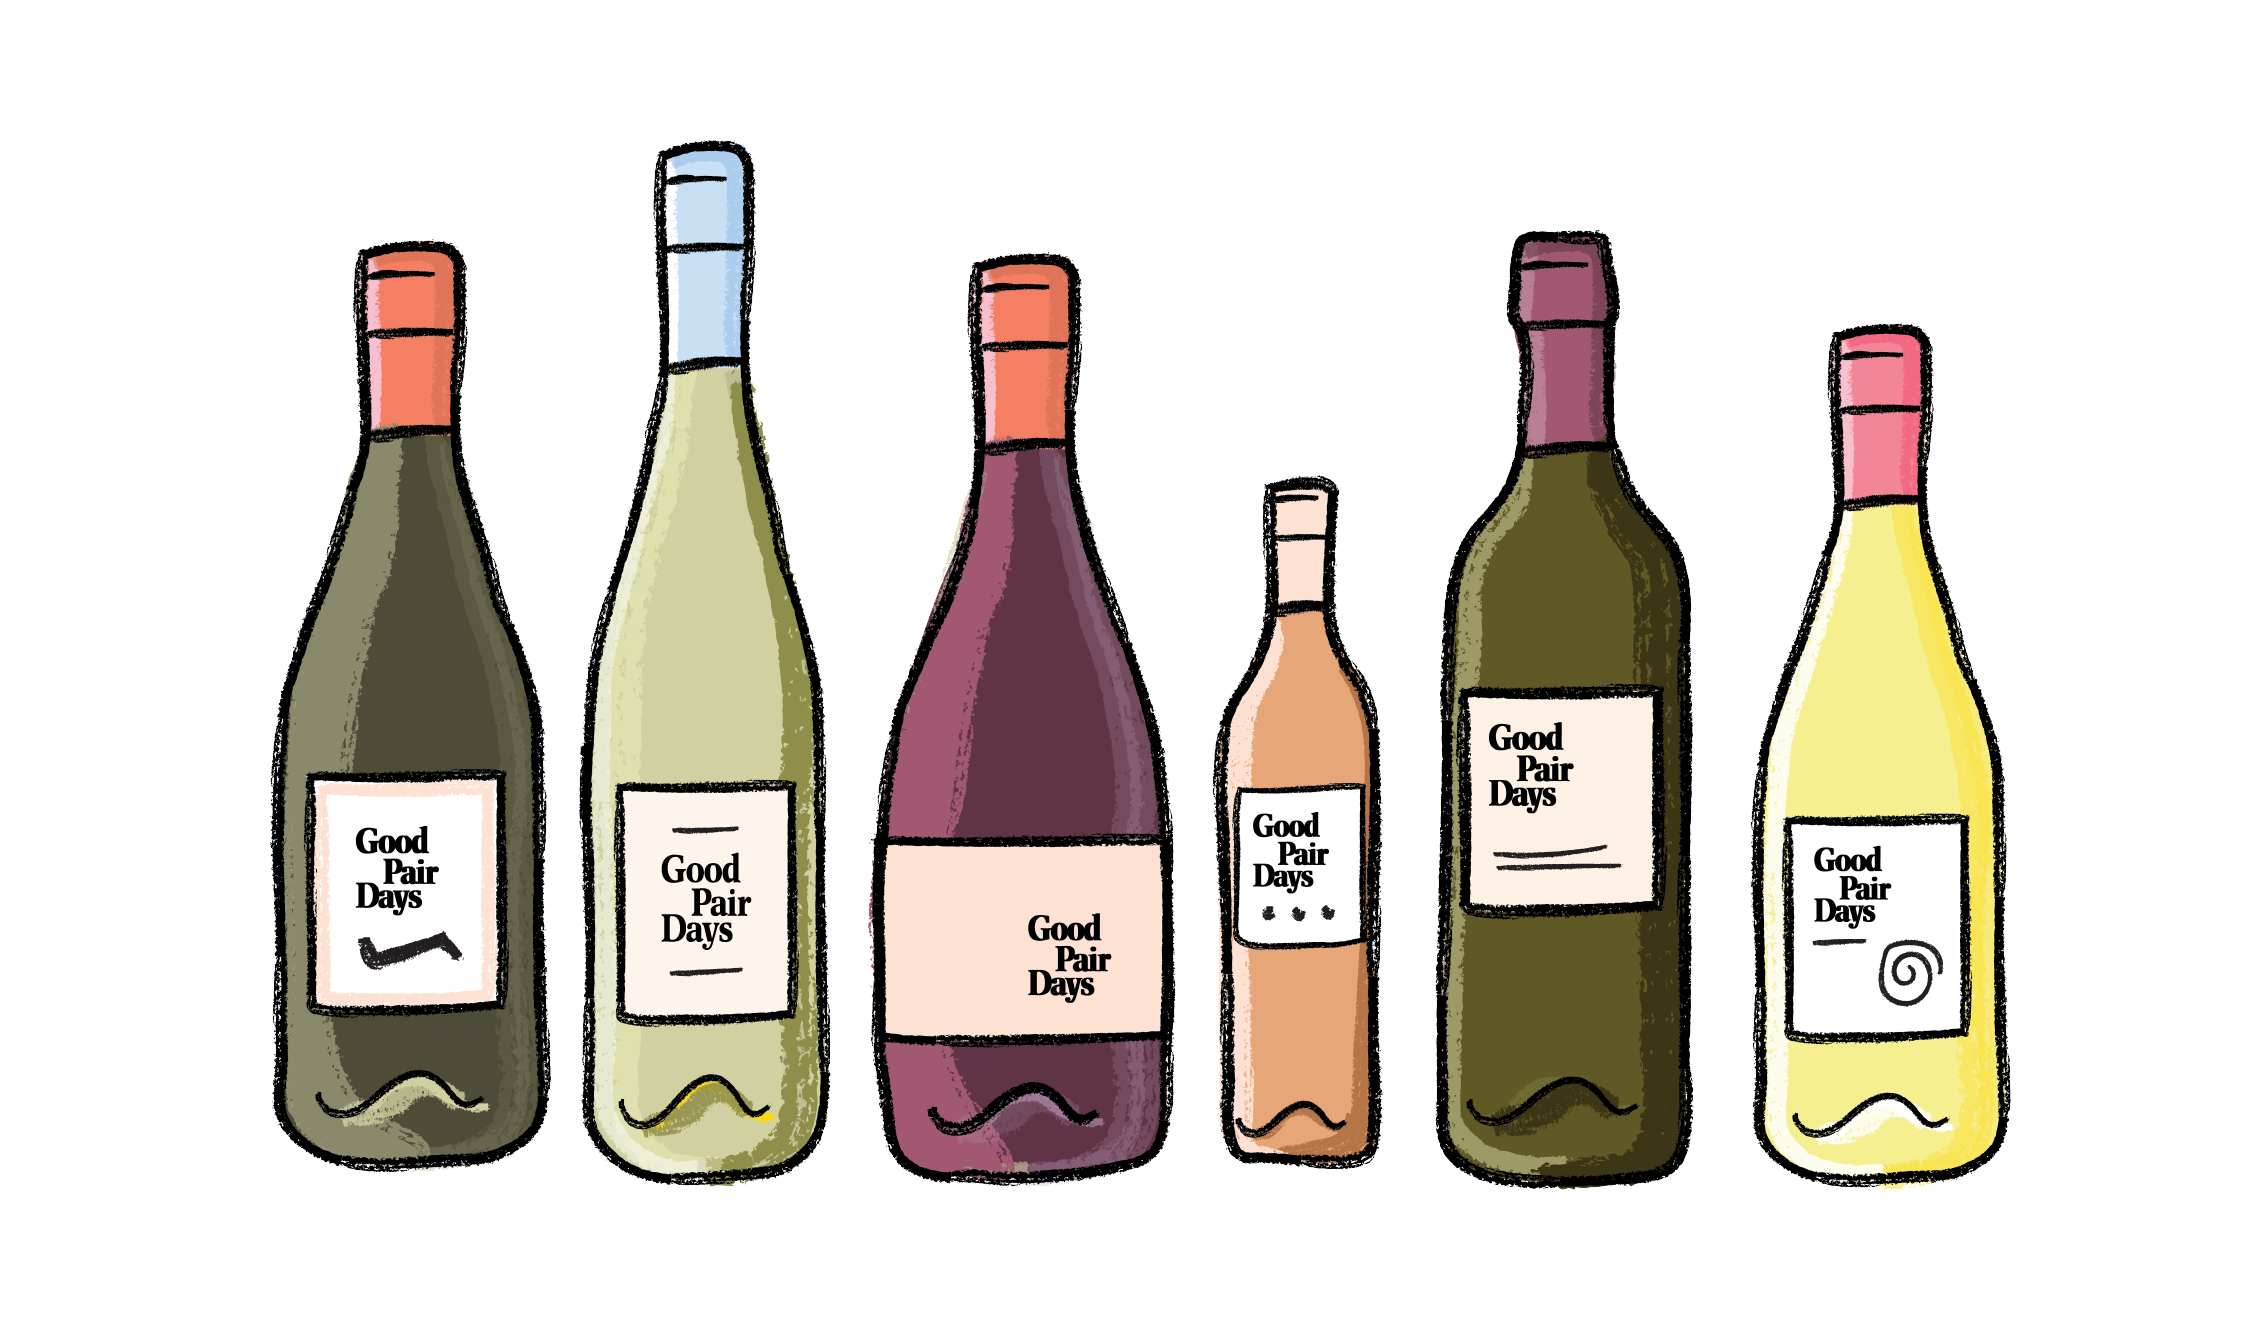 Main Wine Styles